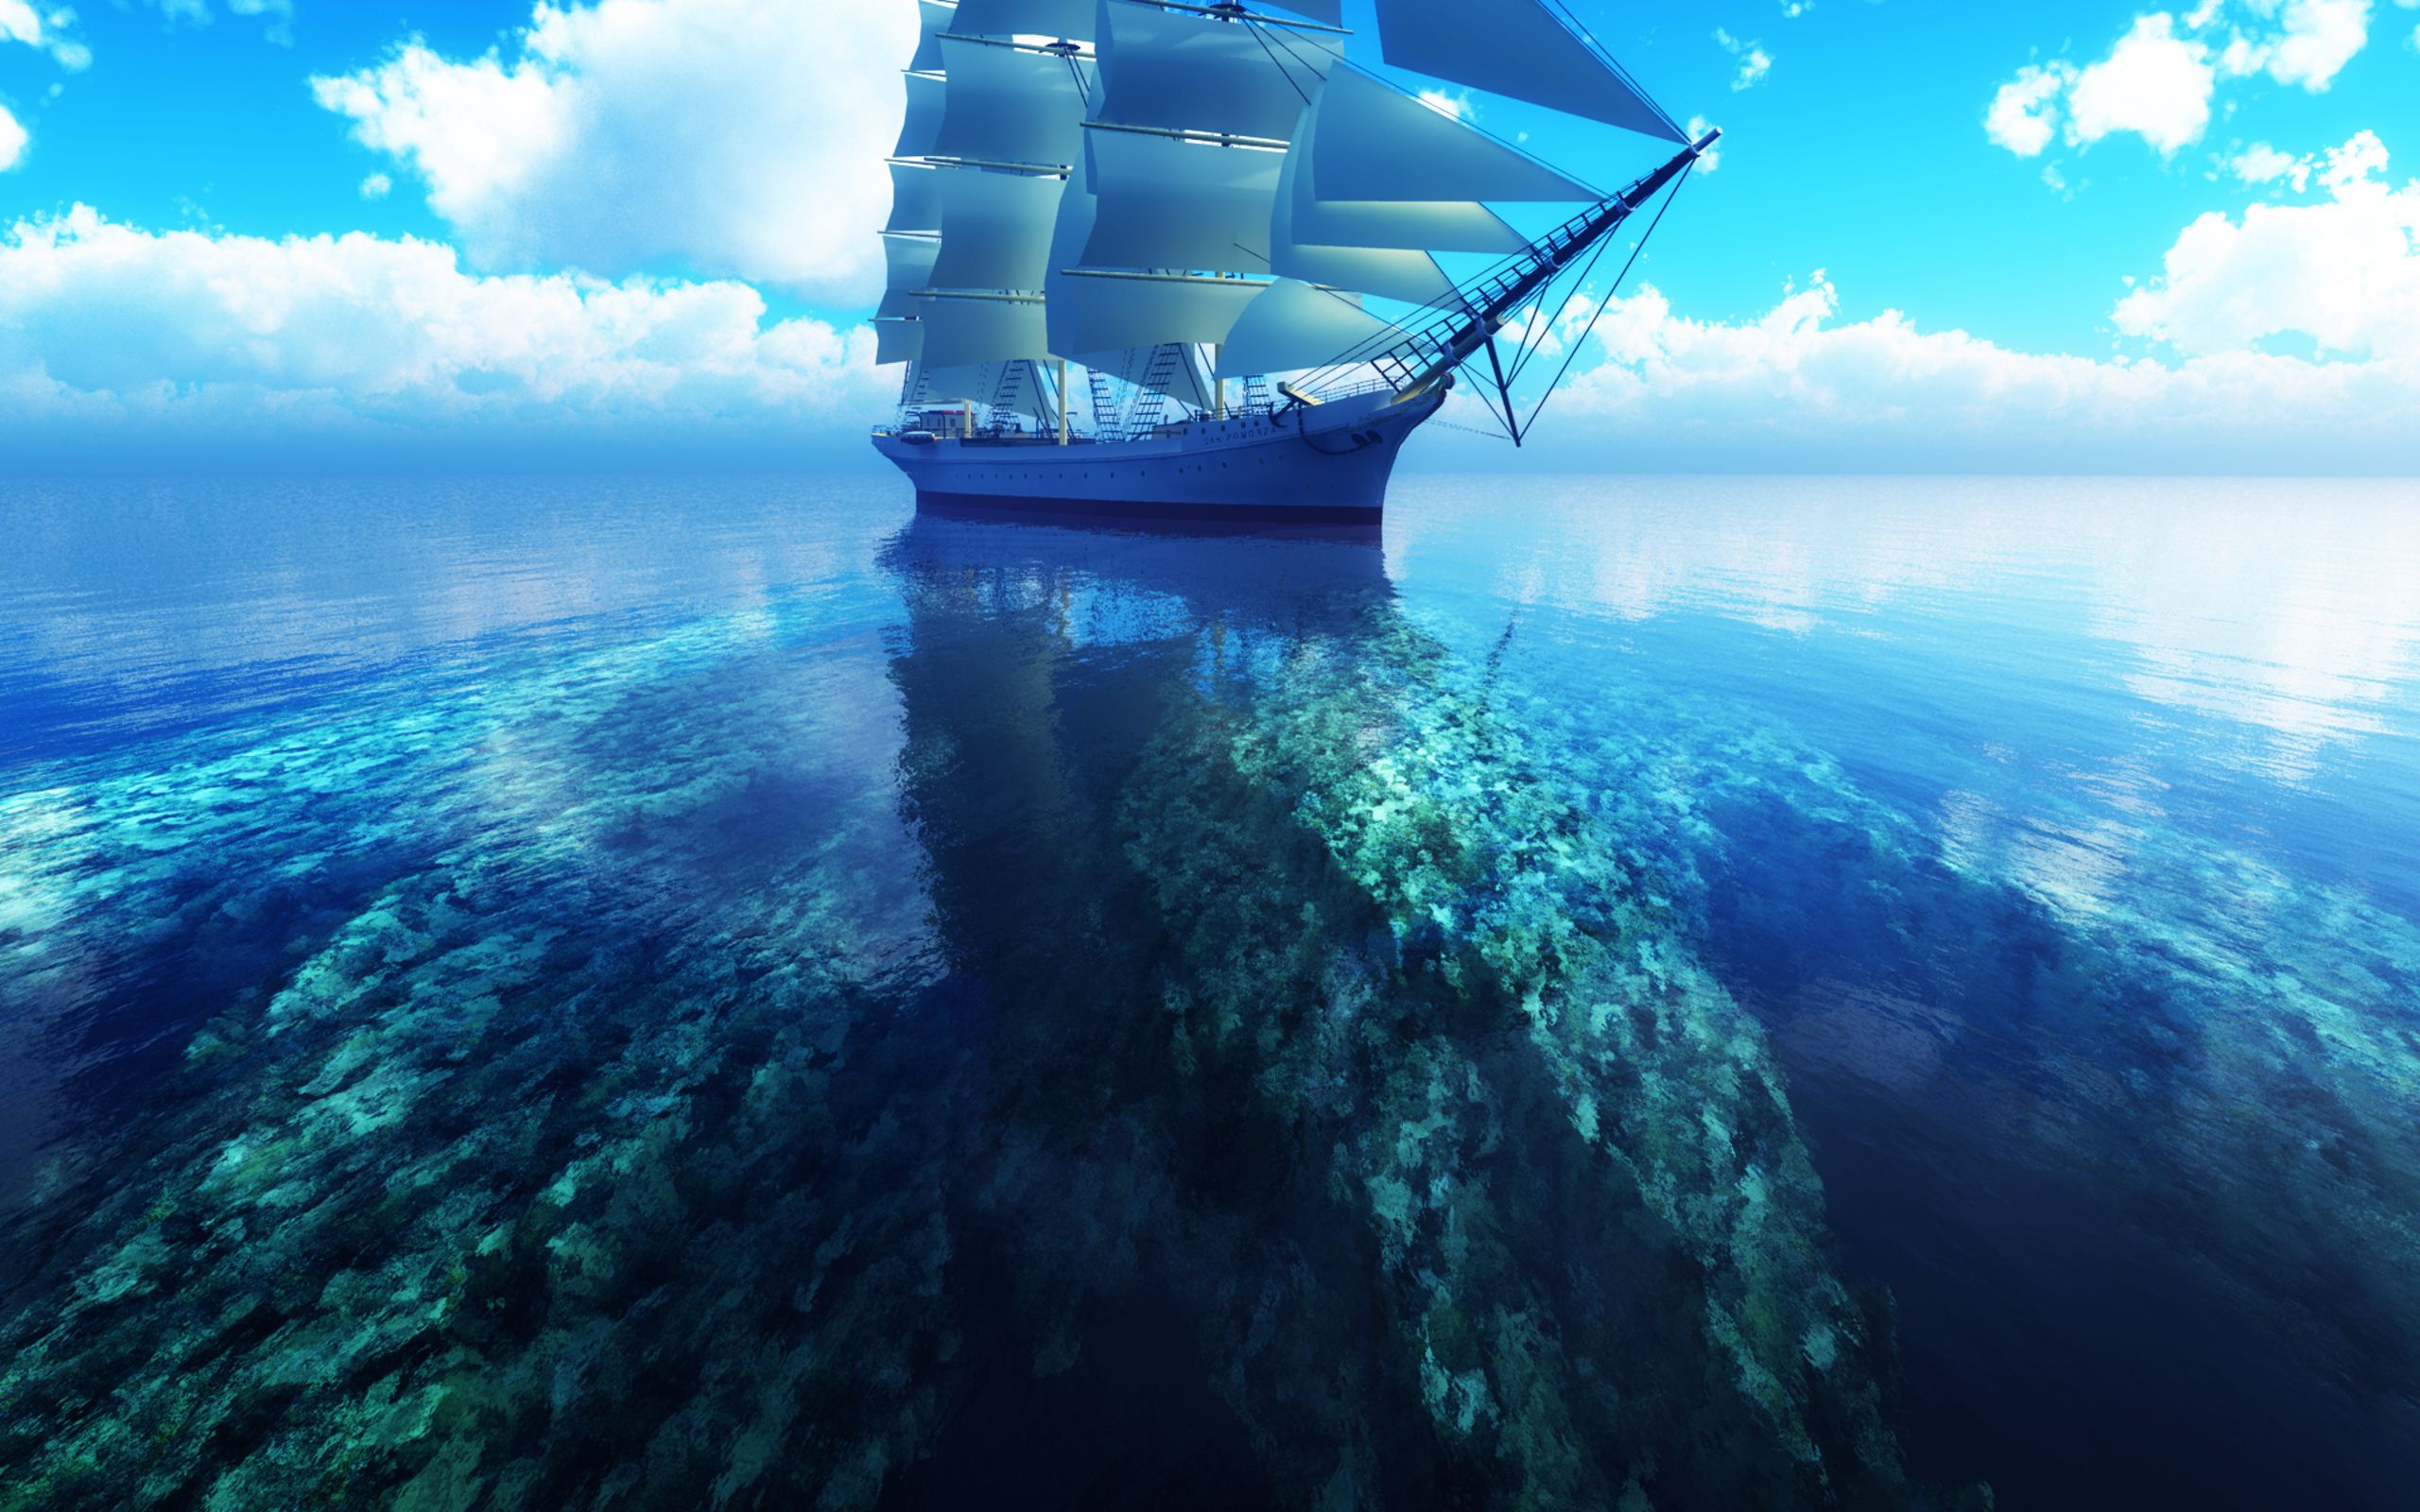 دانلود background کشتی شیک سفید رنگ بر دریای آبی شفاف